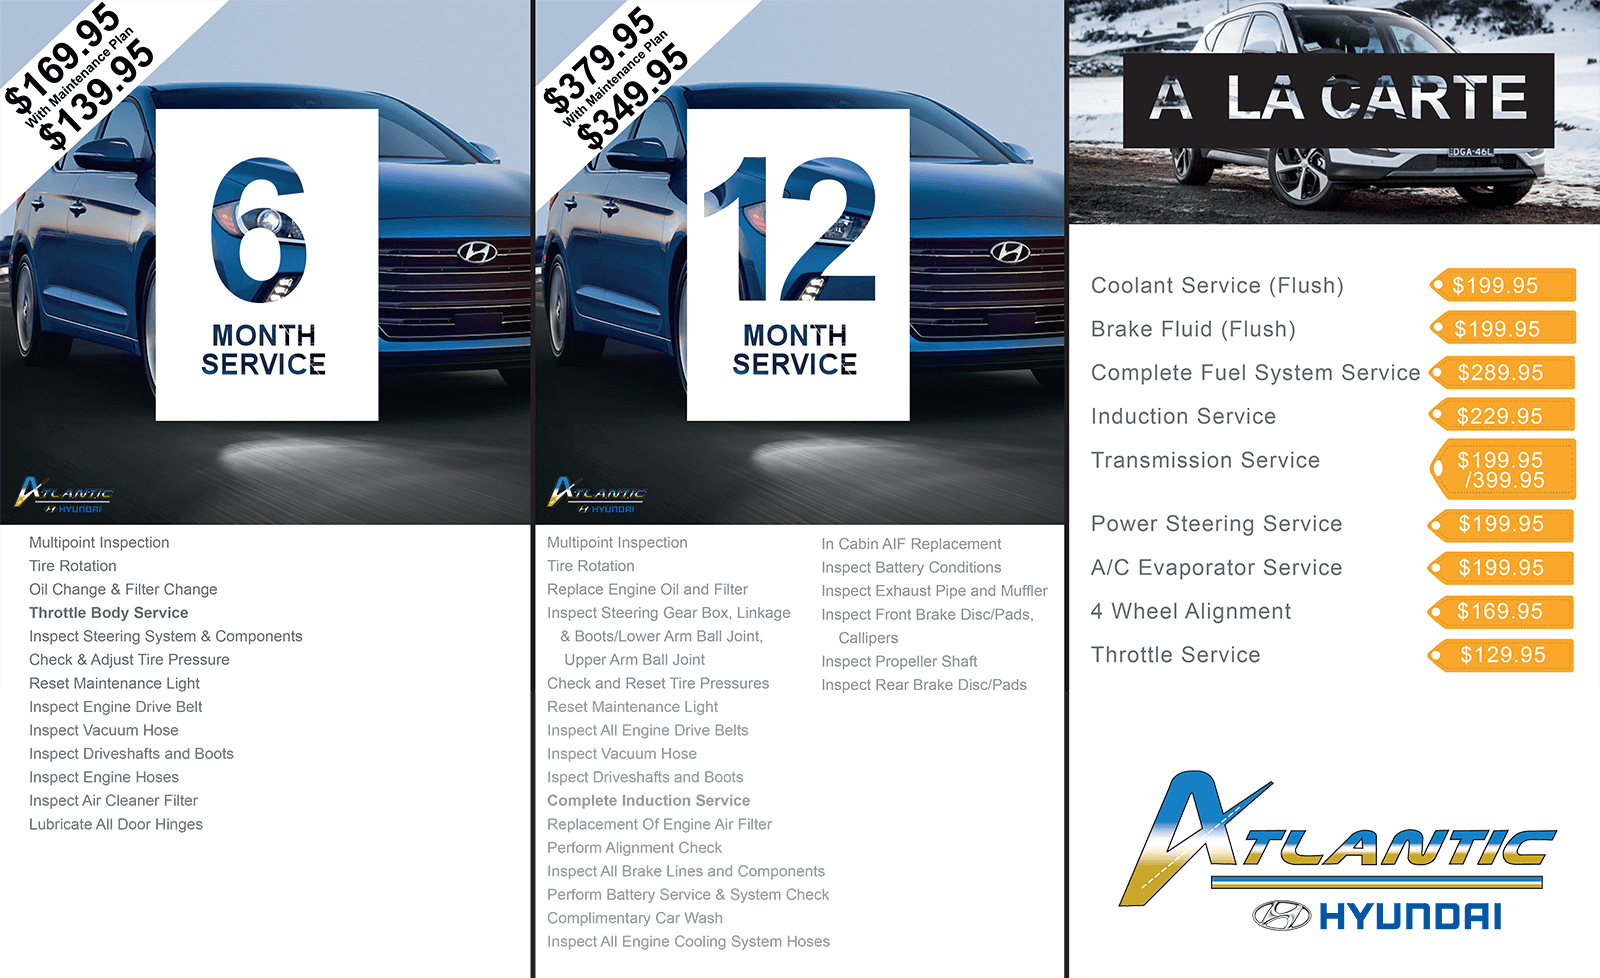 Atlantic Hyundai Service Menu - Hyundai (1600x978), Png Download